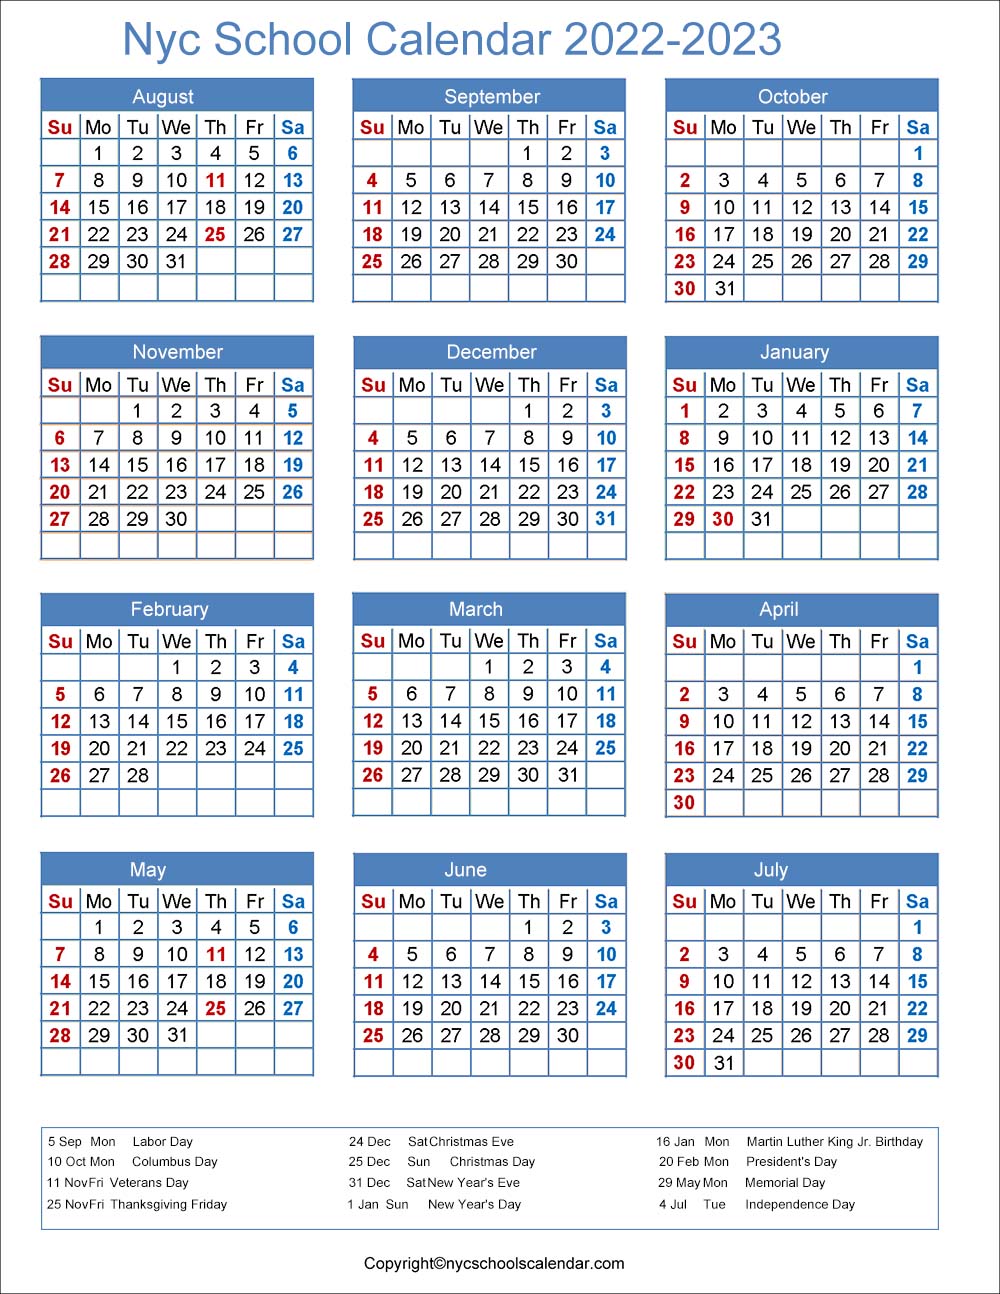 Nyc Doe Calendar 2022 23 Pdf Doe Calendar 2022 Off 69% - Www.gmcanantnag.net